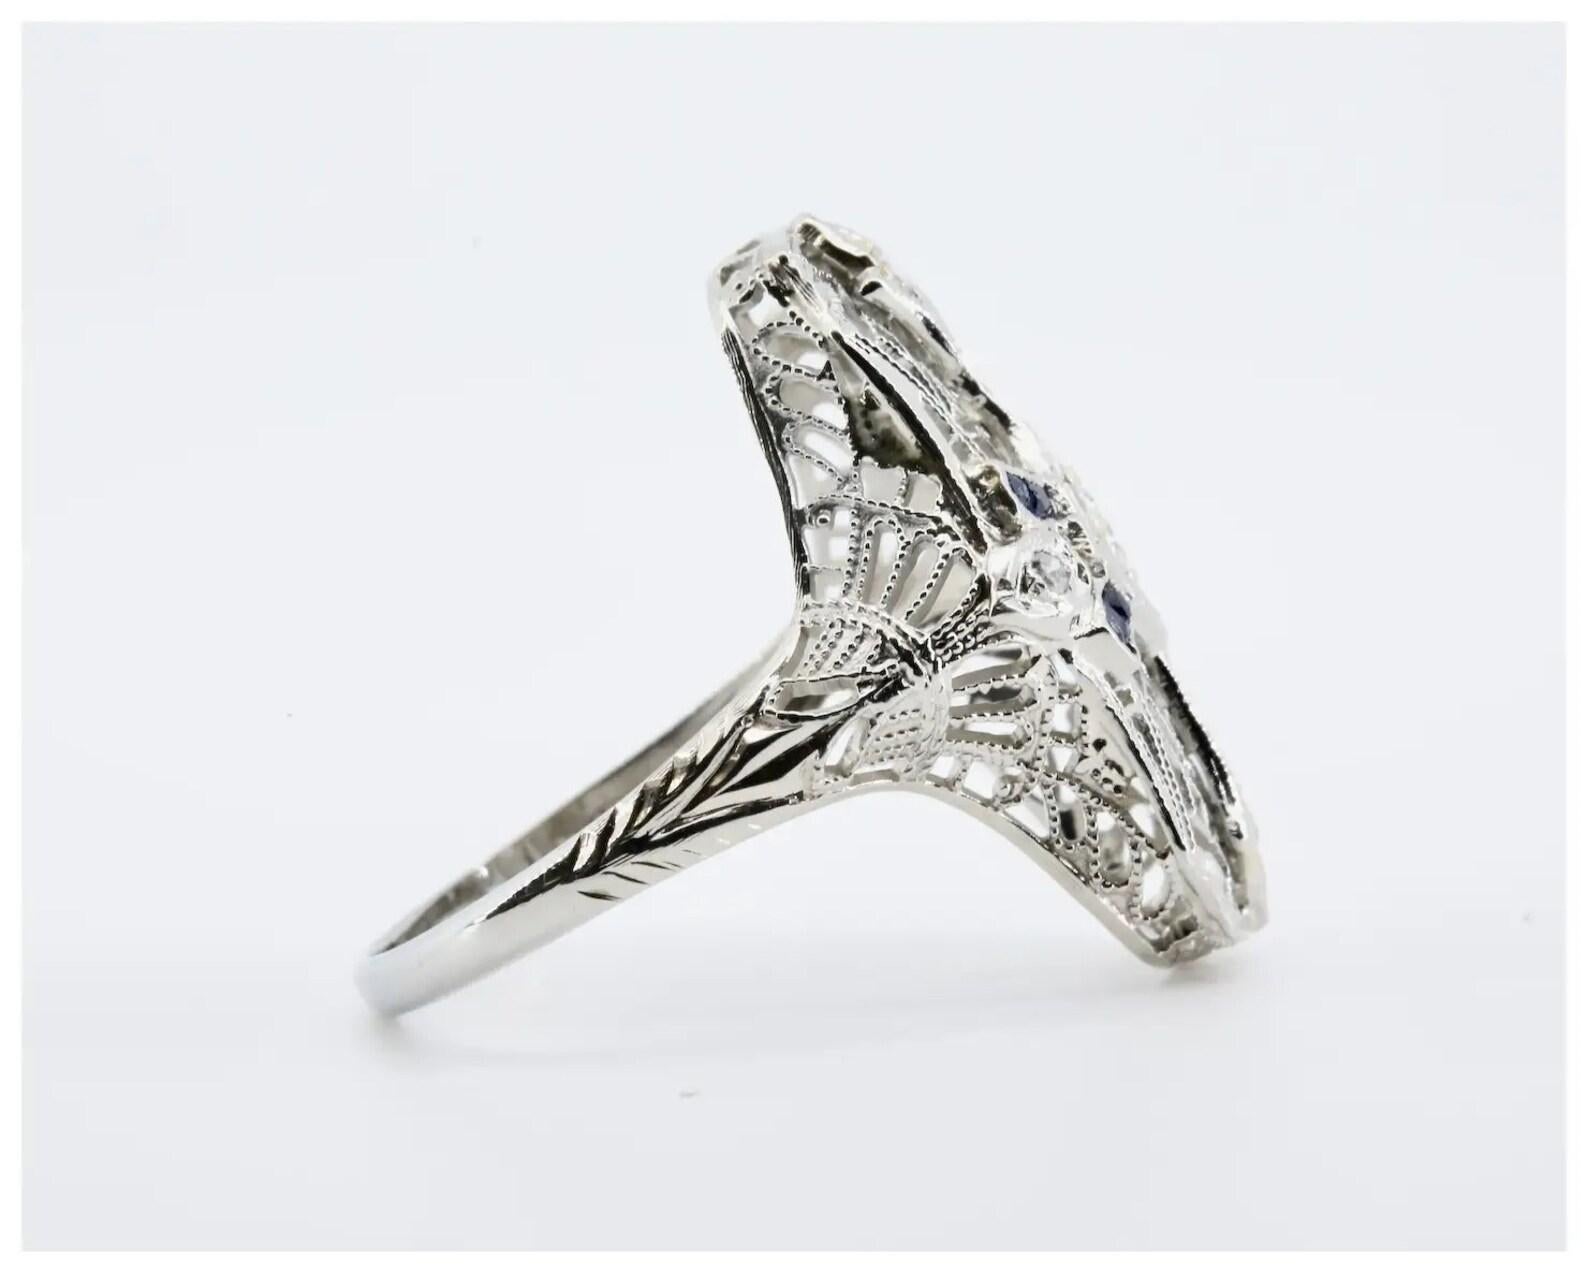 Ein Art-Deco-Ring mit Diamanten im alten europäischen Schliff und Saphiren im französischen Schliff.

Besetzt mit fünf antiken Diamanten im europäischen Schliff von 0,30 CTW, Farbe G und Reinheit VS.

Akzentuiert durch acht Saphire im französischen